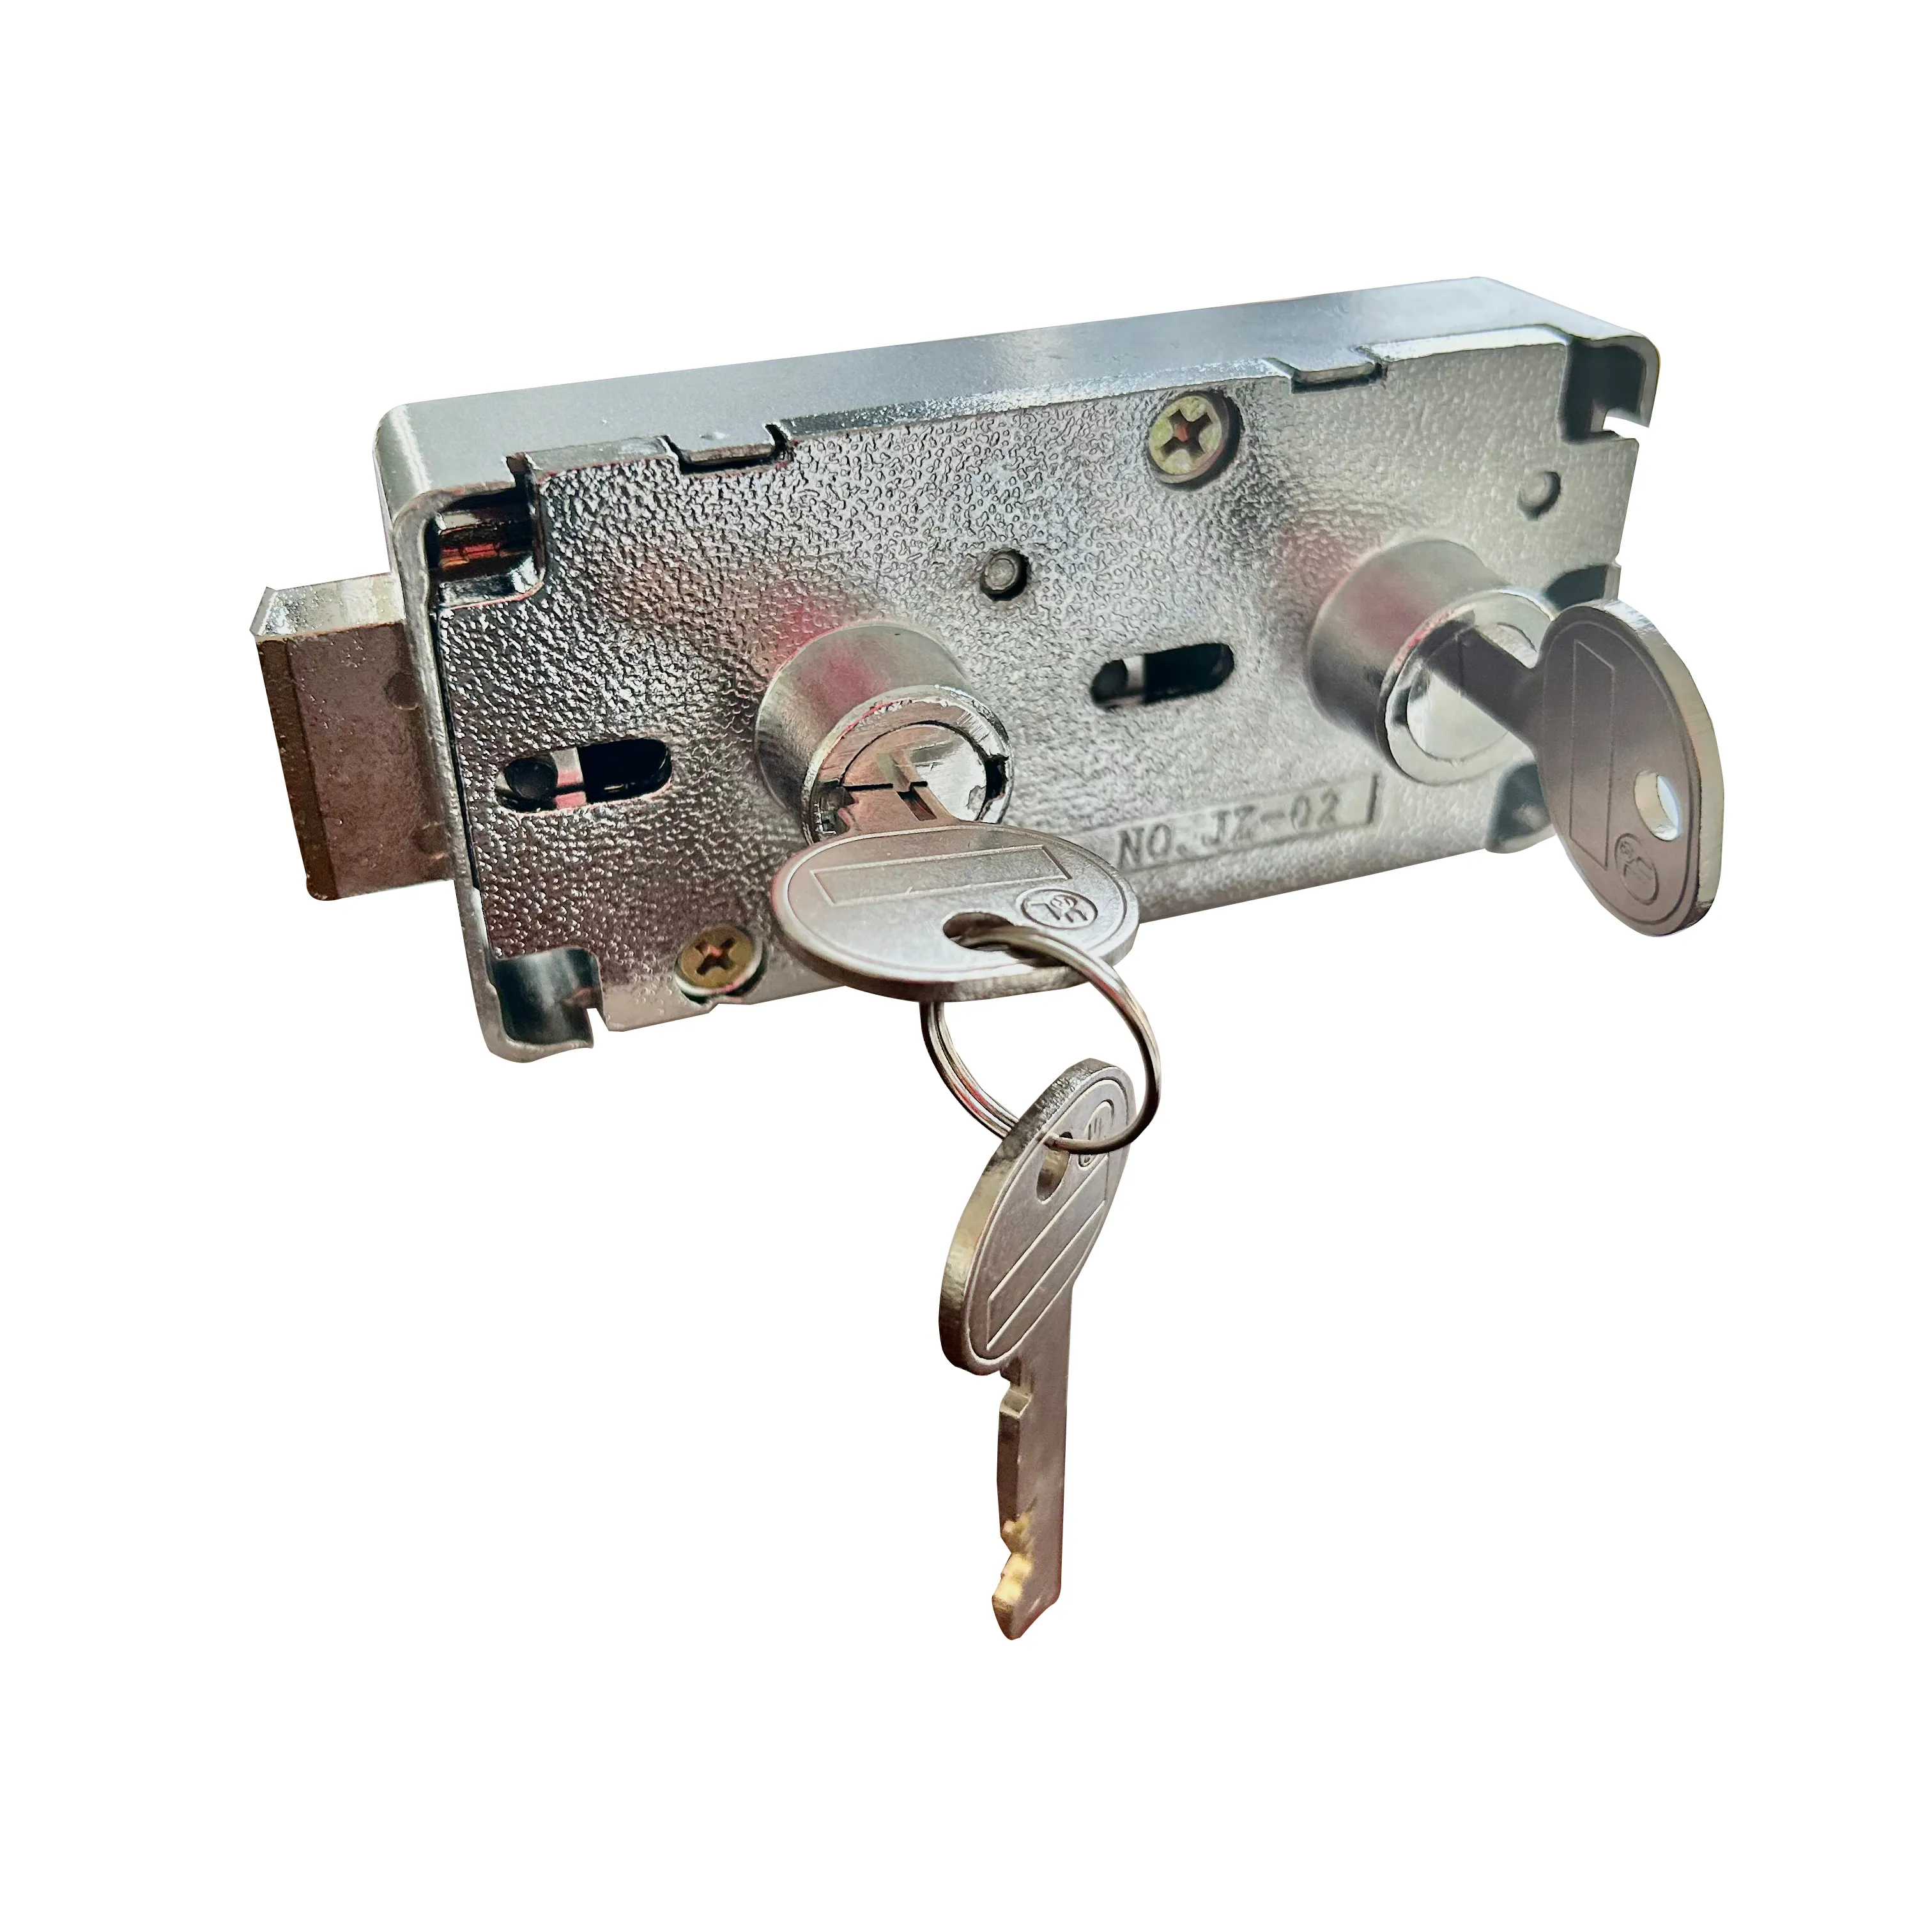 Khóa kép cho hộp ký gửi an toàn với khóa khách hàng và JZ-02 khóa chính